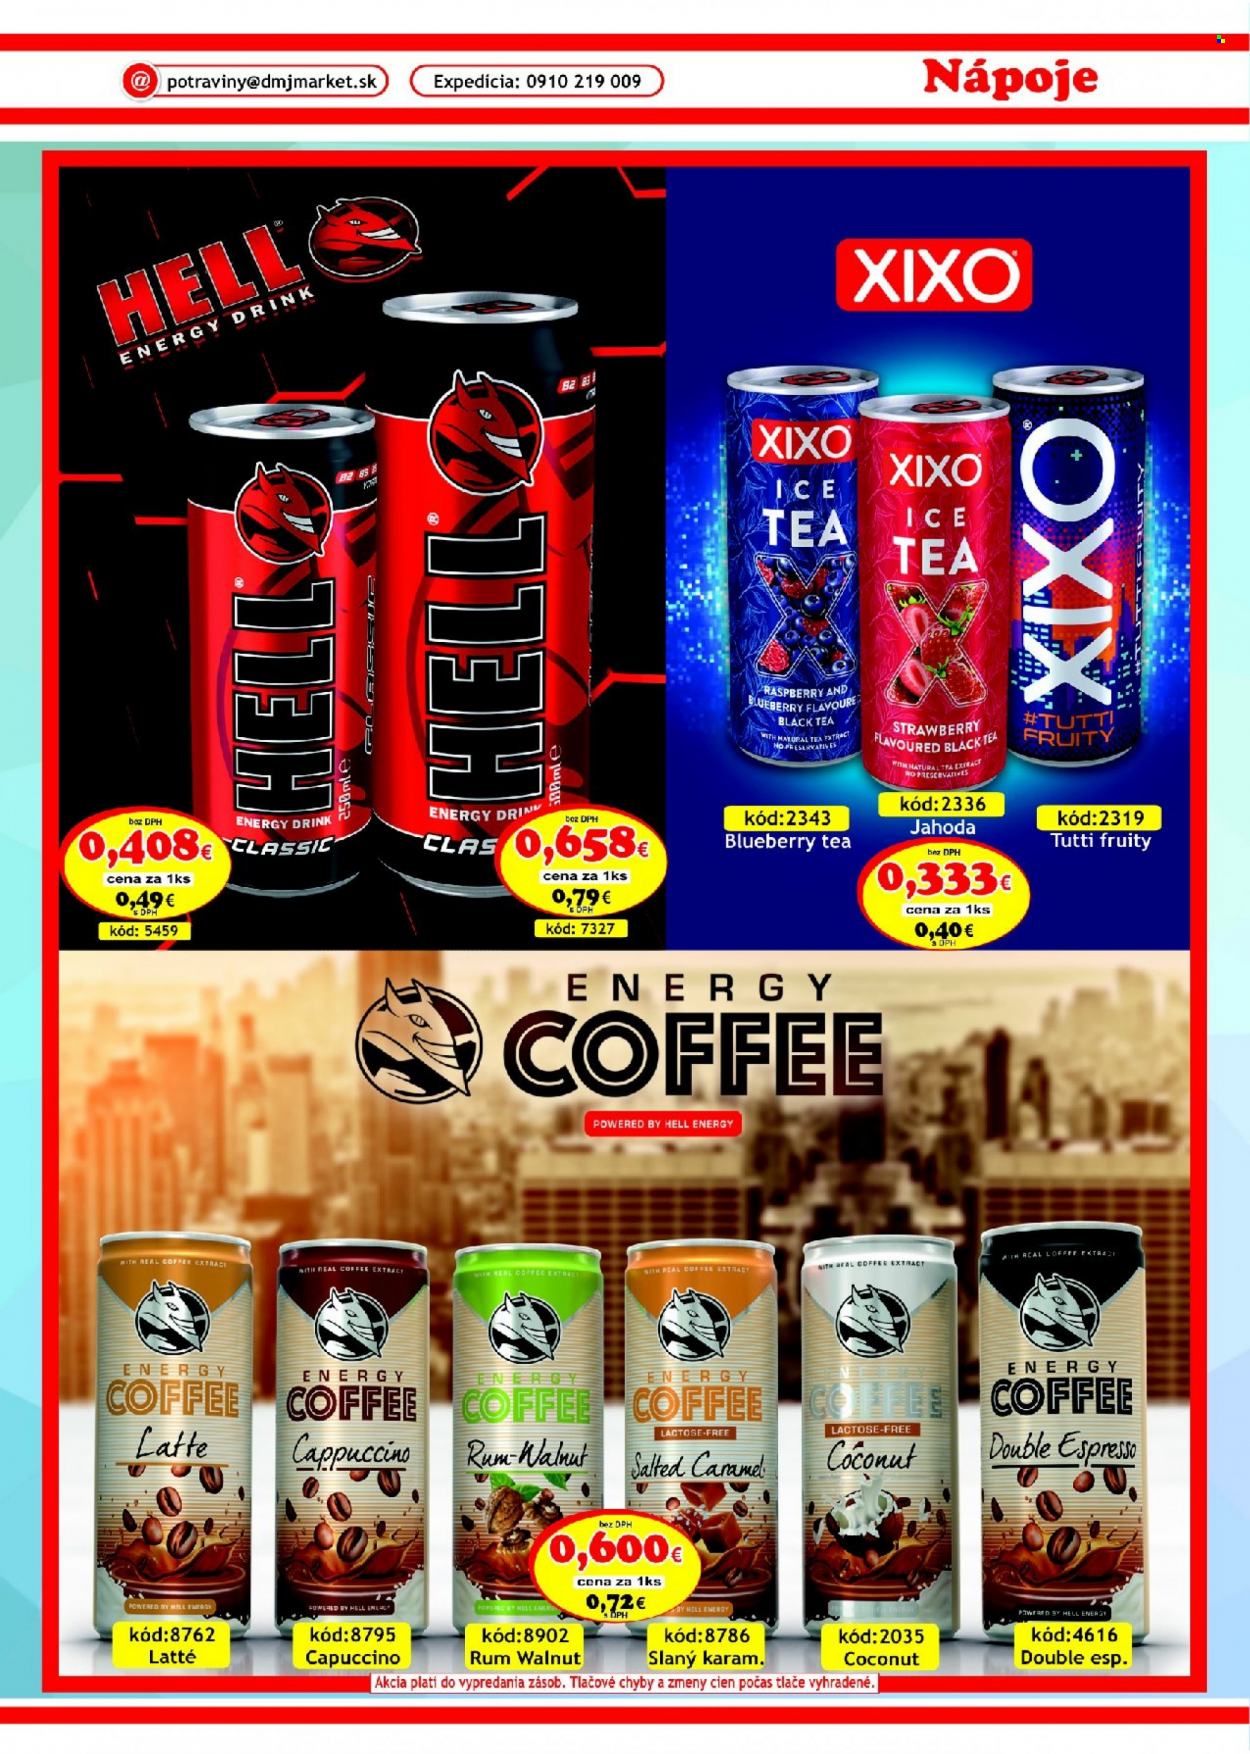 Leták DMJ market - 1.9.2023 - 31.10.2023 - Produkty v akcii - energetický nápoj, Hello, ľadový čaj, Hell, Xixo, ľadová káva, cappuccino, Espresso, alkohol, rum, Cien. Strana 25.